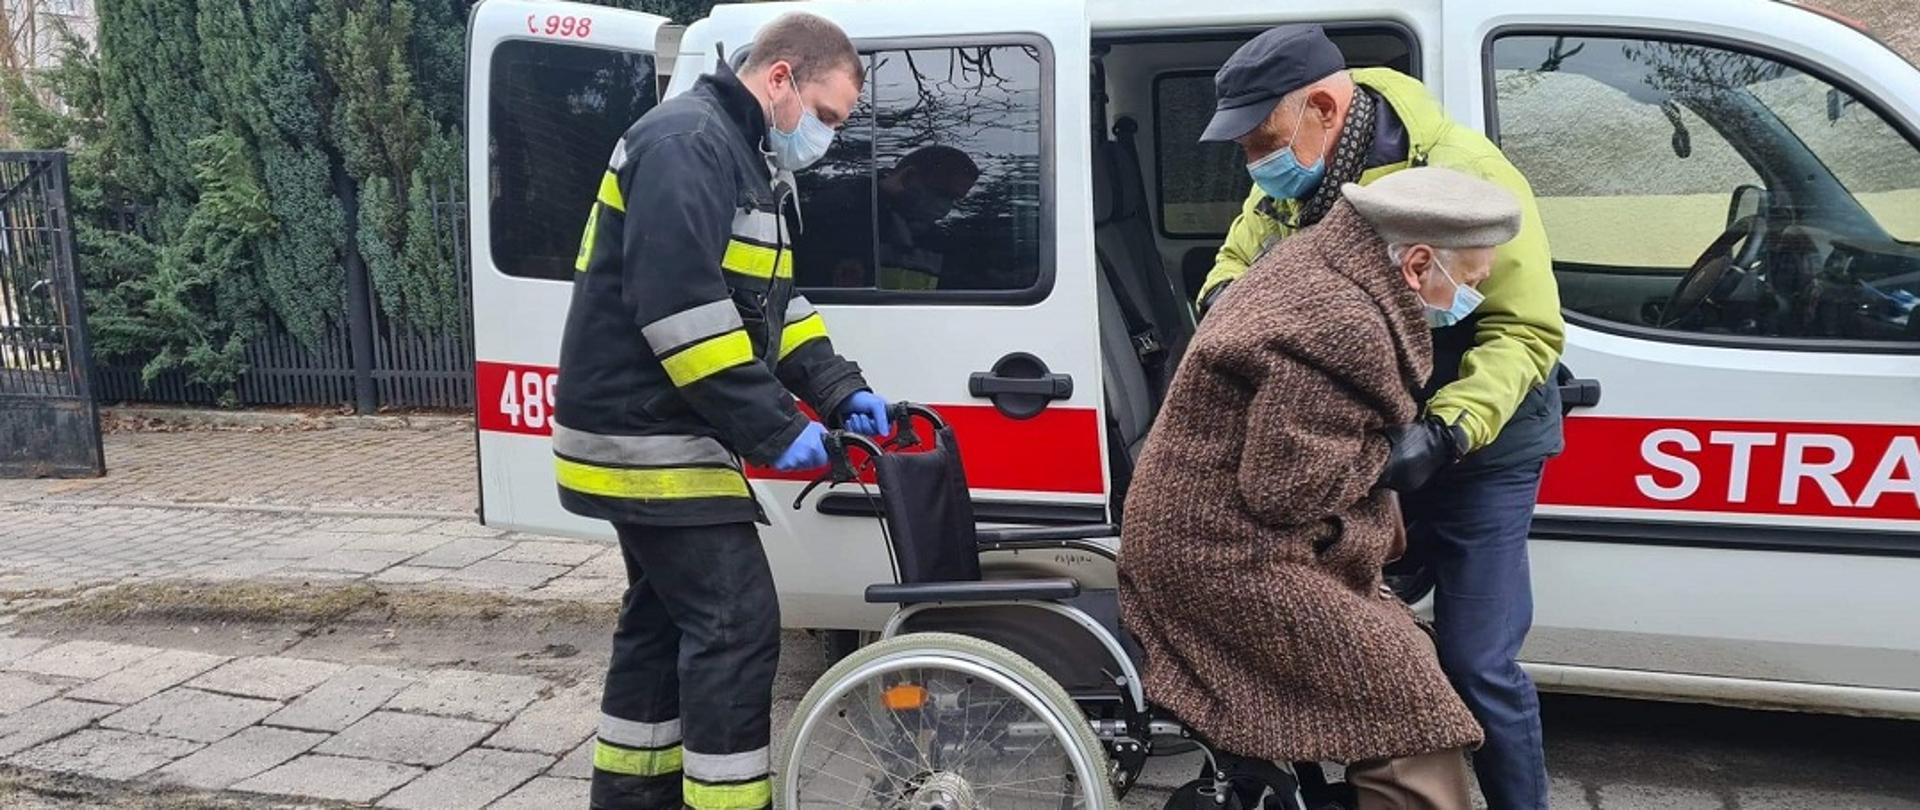 Na zdjęciu widać strażaka oraz mężczyznę pomagających zejść z wózka i wsiąść do samochodu kwatermistrzowskiego Ochotniczej Straży Pożarnej. Kobieta i mężczyzna są spokrewnieni. W tle widać samochód kwatermistrzowski z OSP Skarżysko.